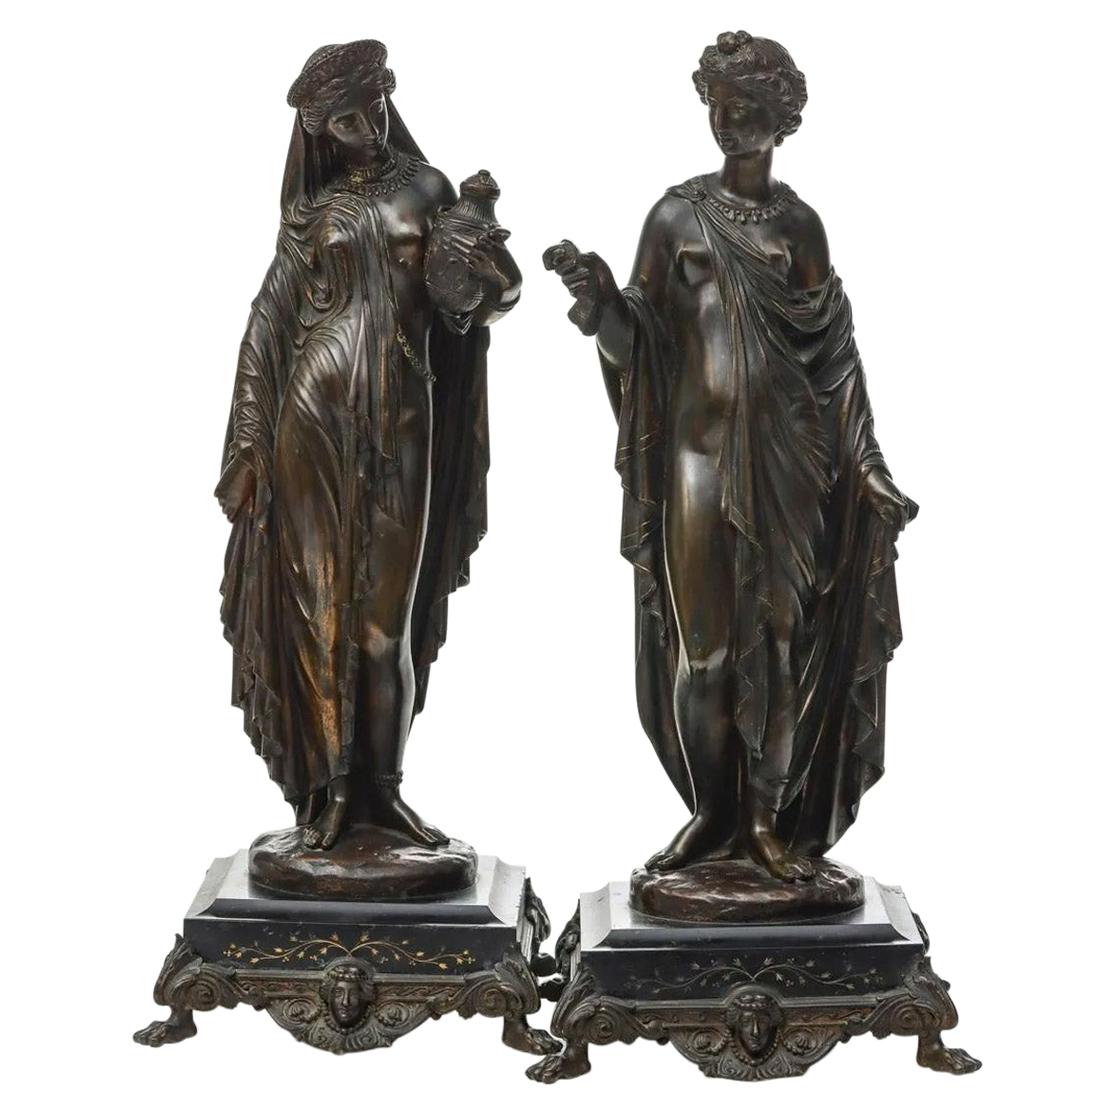 Paar neoklassizistische Skulpturen aus patinierter Bronze von hoher Qualität